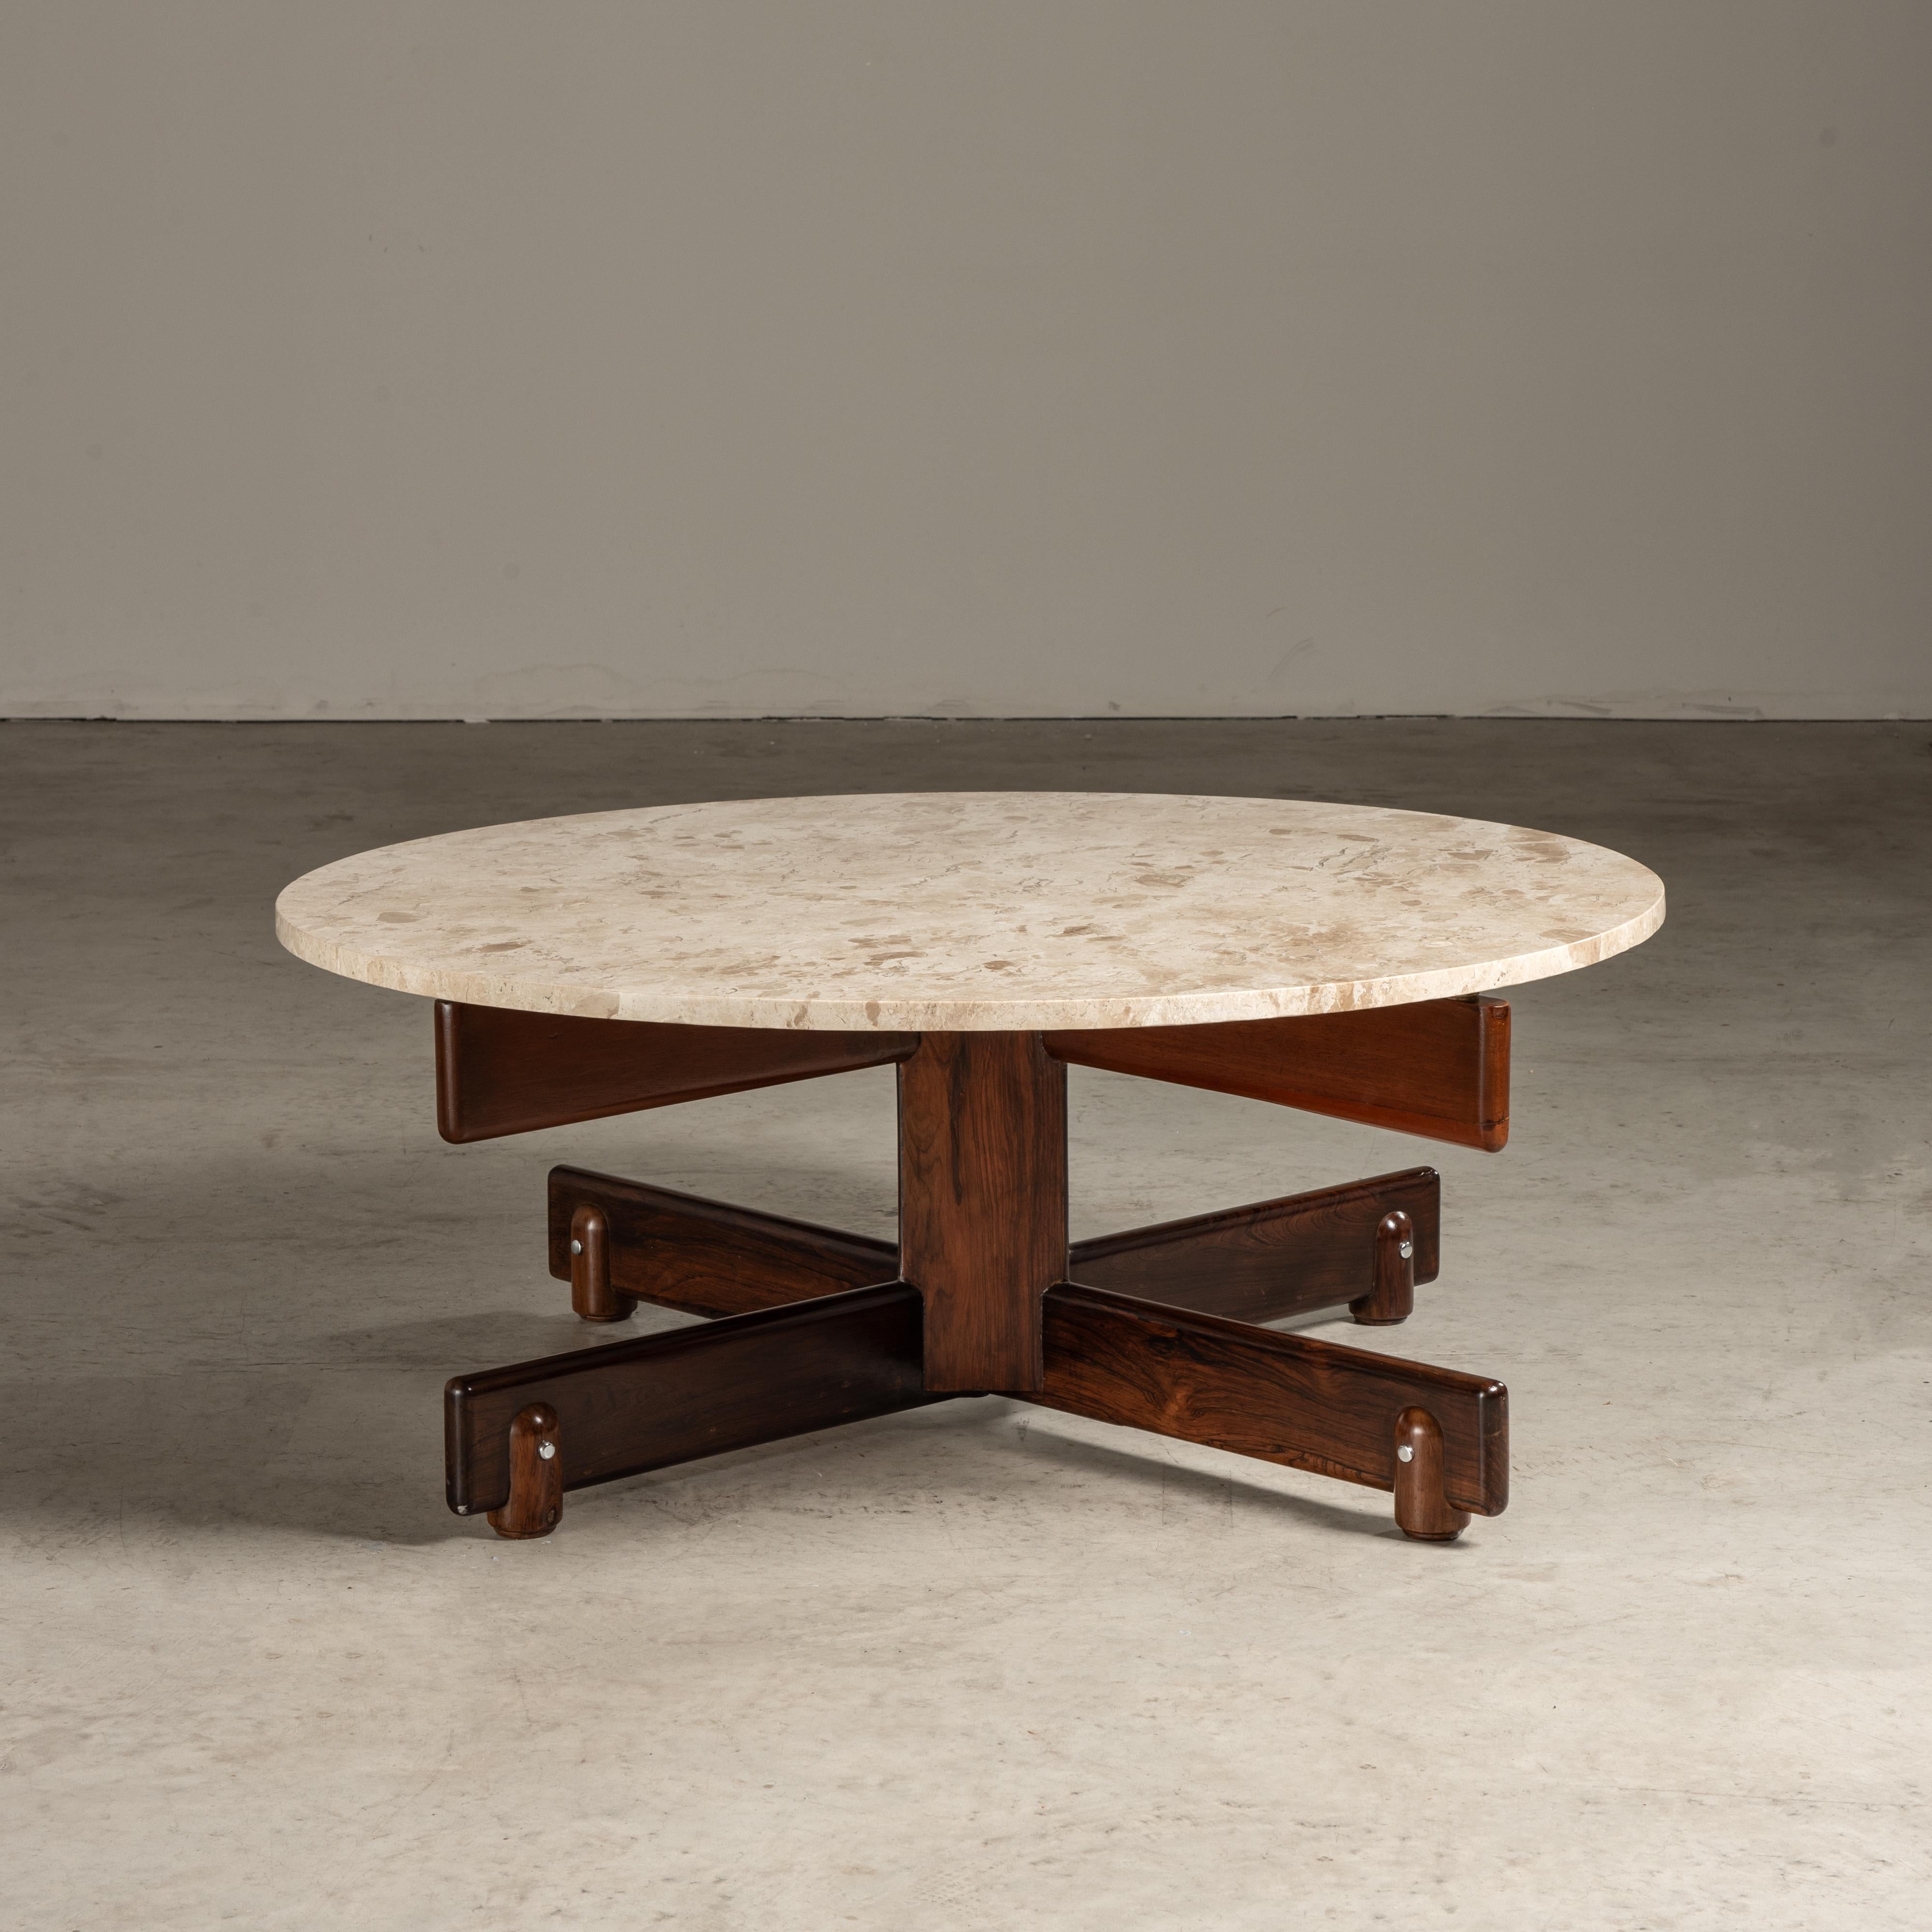 La table basse AleXS, conçue par l'estimé designer brésilien Sergio Rodrigues en 1960, témoigne de sa capacité à créer des meubles qui capturent l'essence du caractère et de l'esprit brésiliens. La table se distingue par son plateau arrondi en bois